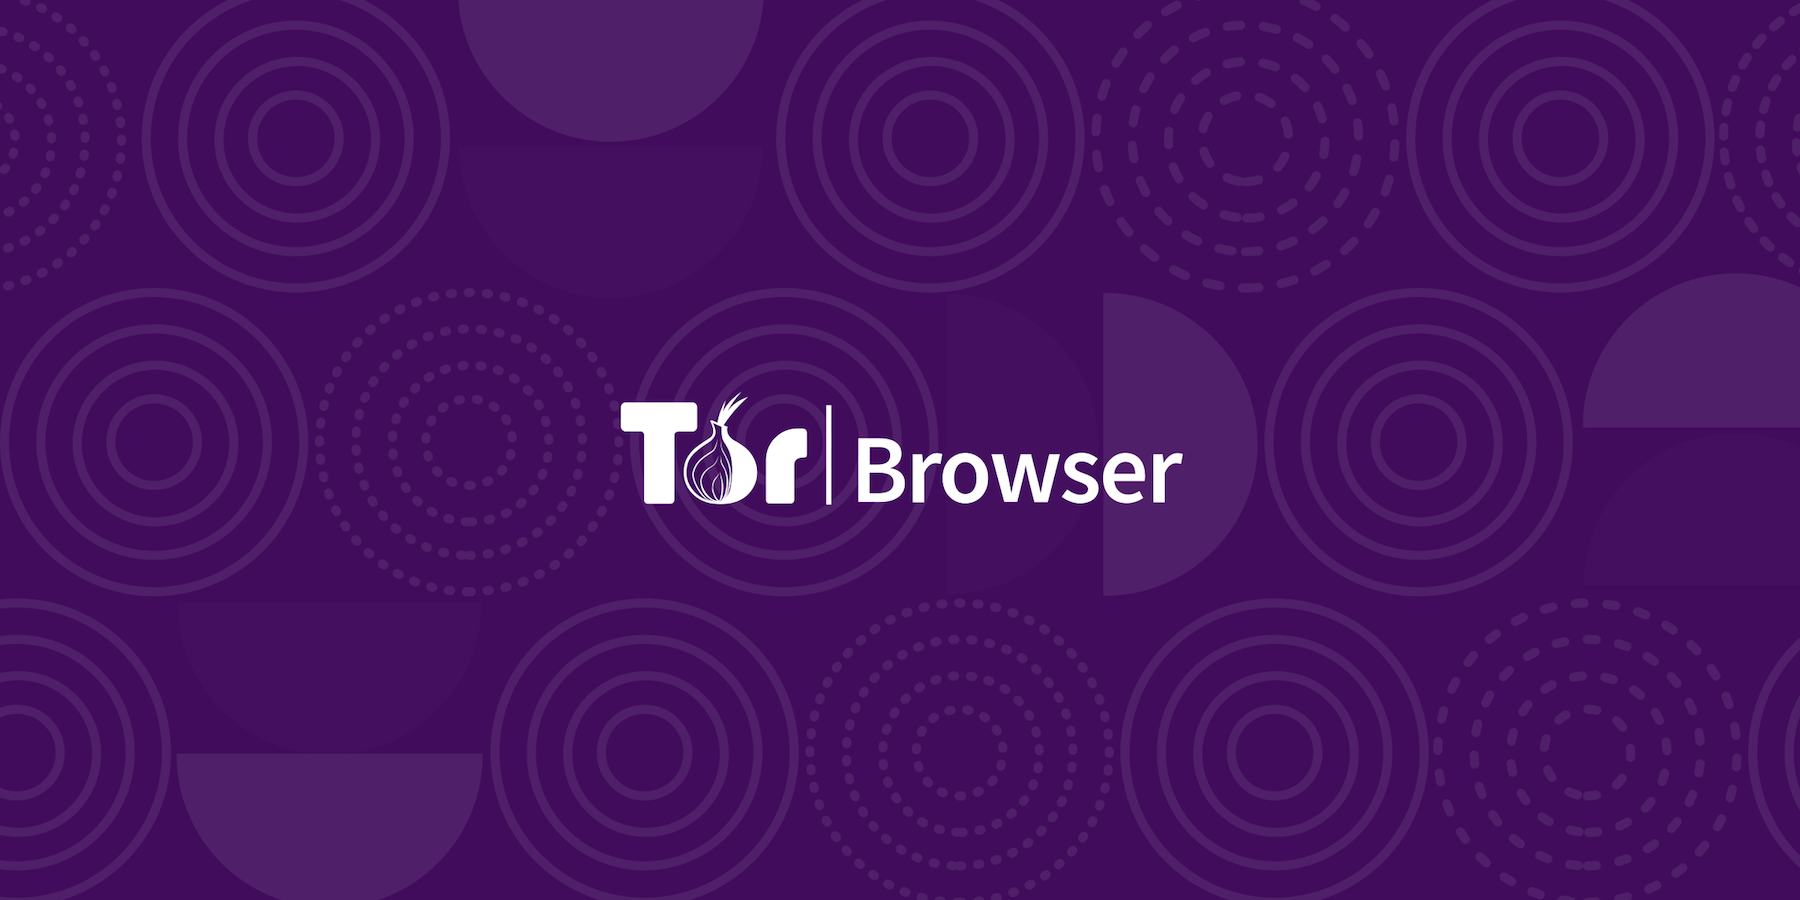 Tor browser bundle for android hidra tor browser vk gidra